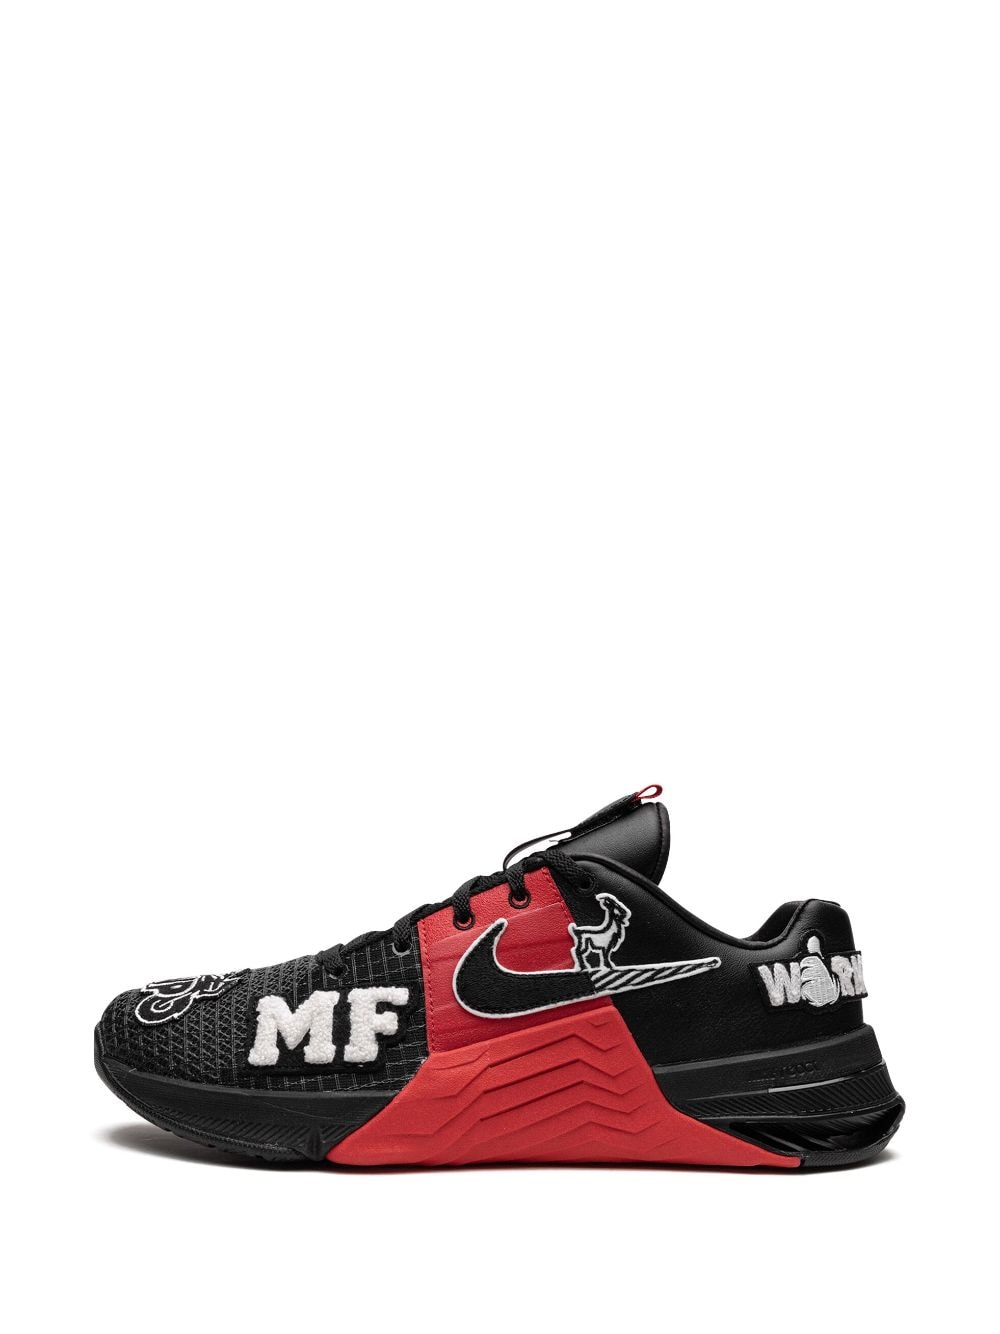 Nike Metcon 8 MF 